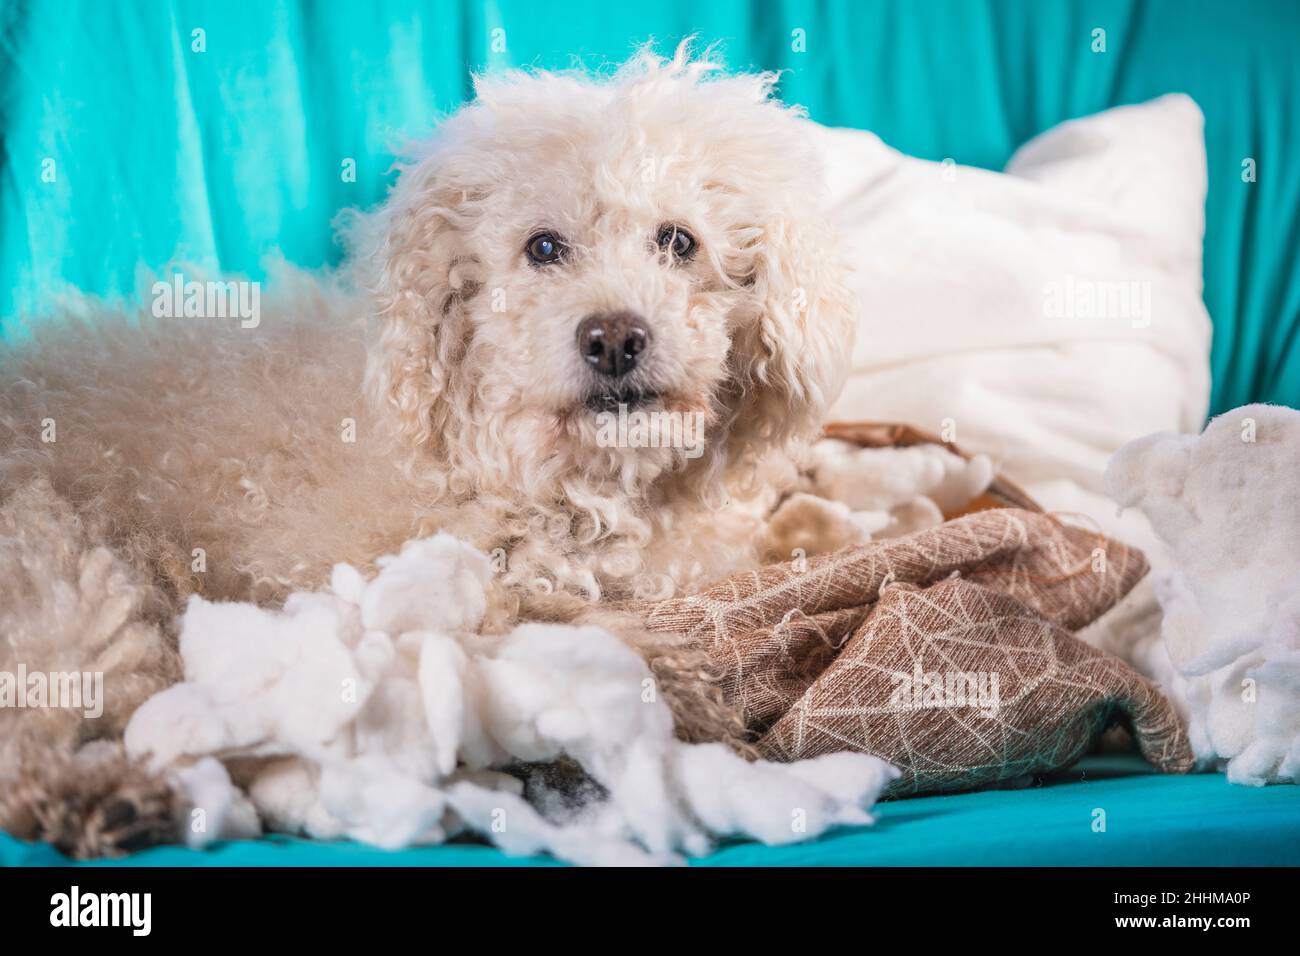 Der schuldige Hund zerstörte das Kissen zu Hause. Brauner Pudel sitzt zwischen den Resten eines Kissens Stockfoto